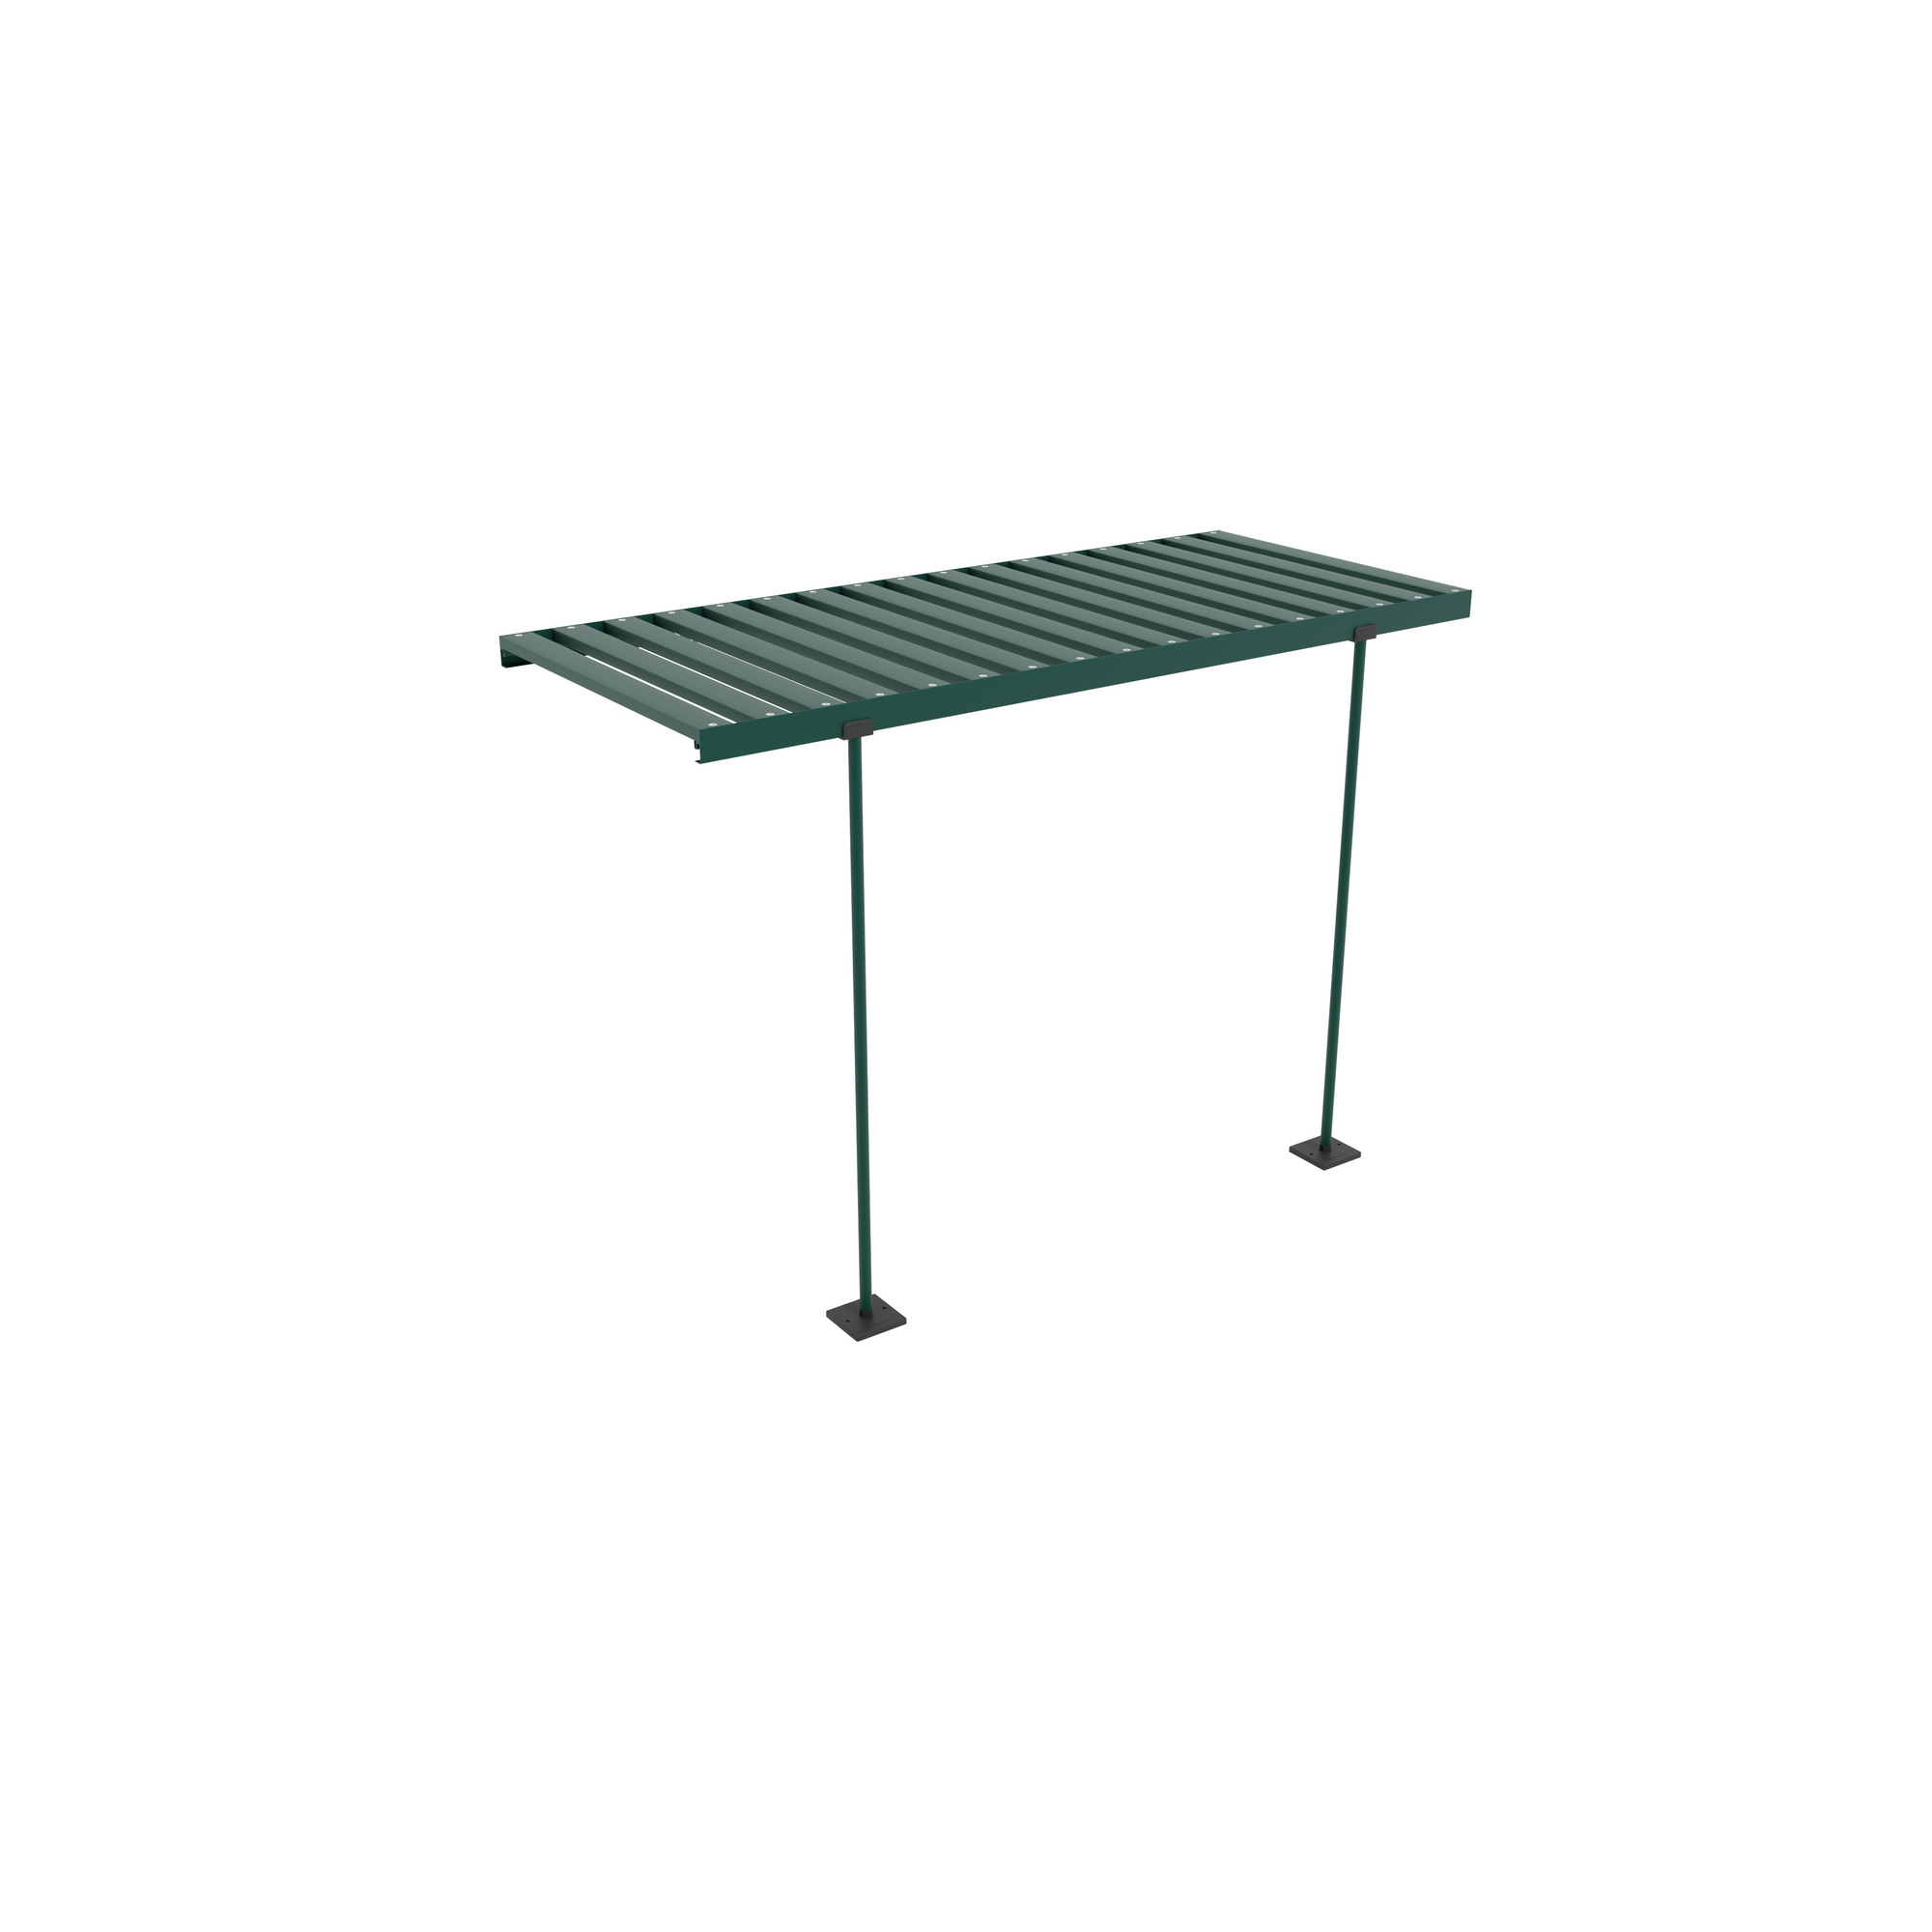 Abklappbarer Alu-Tisch für Gewächshäuser smaragd + product picture